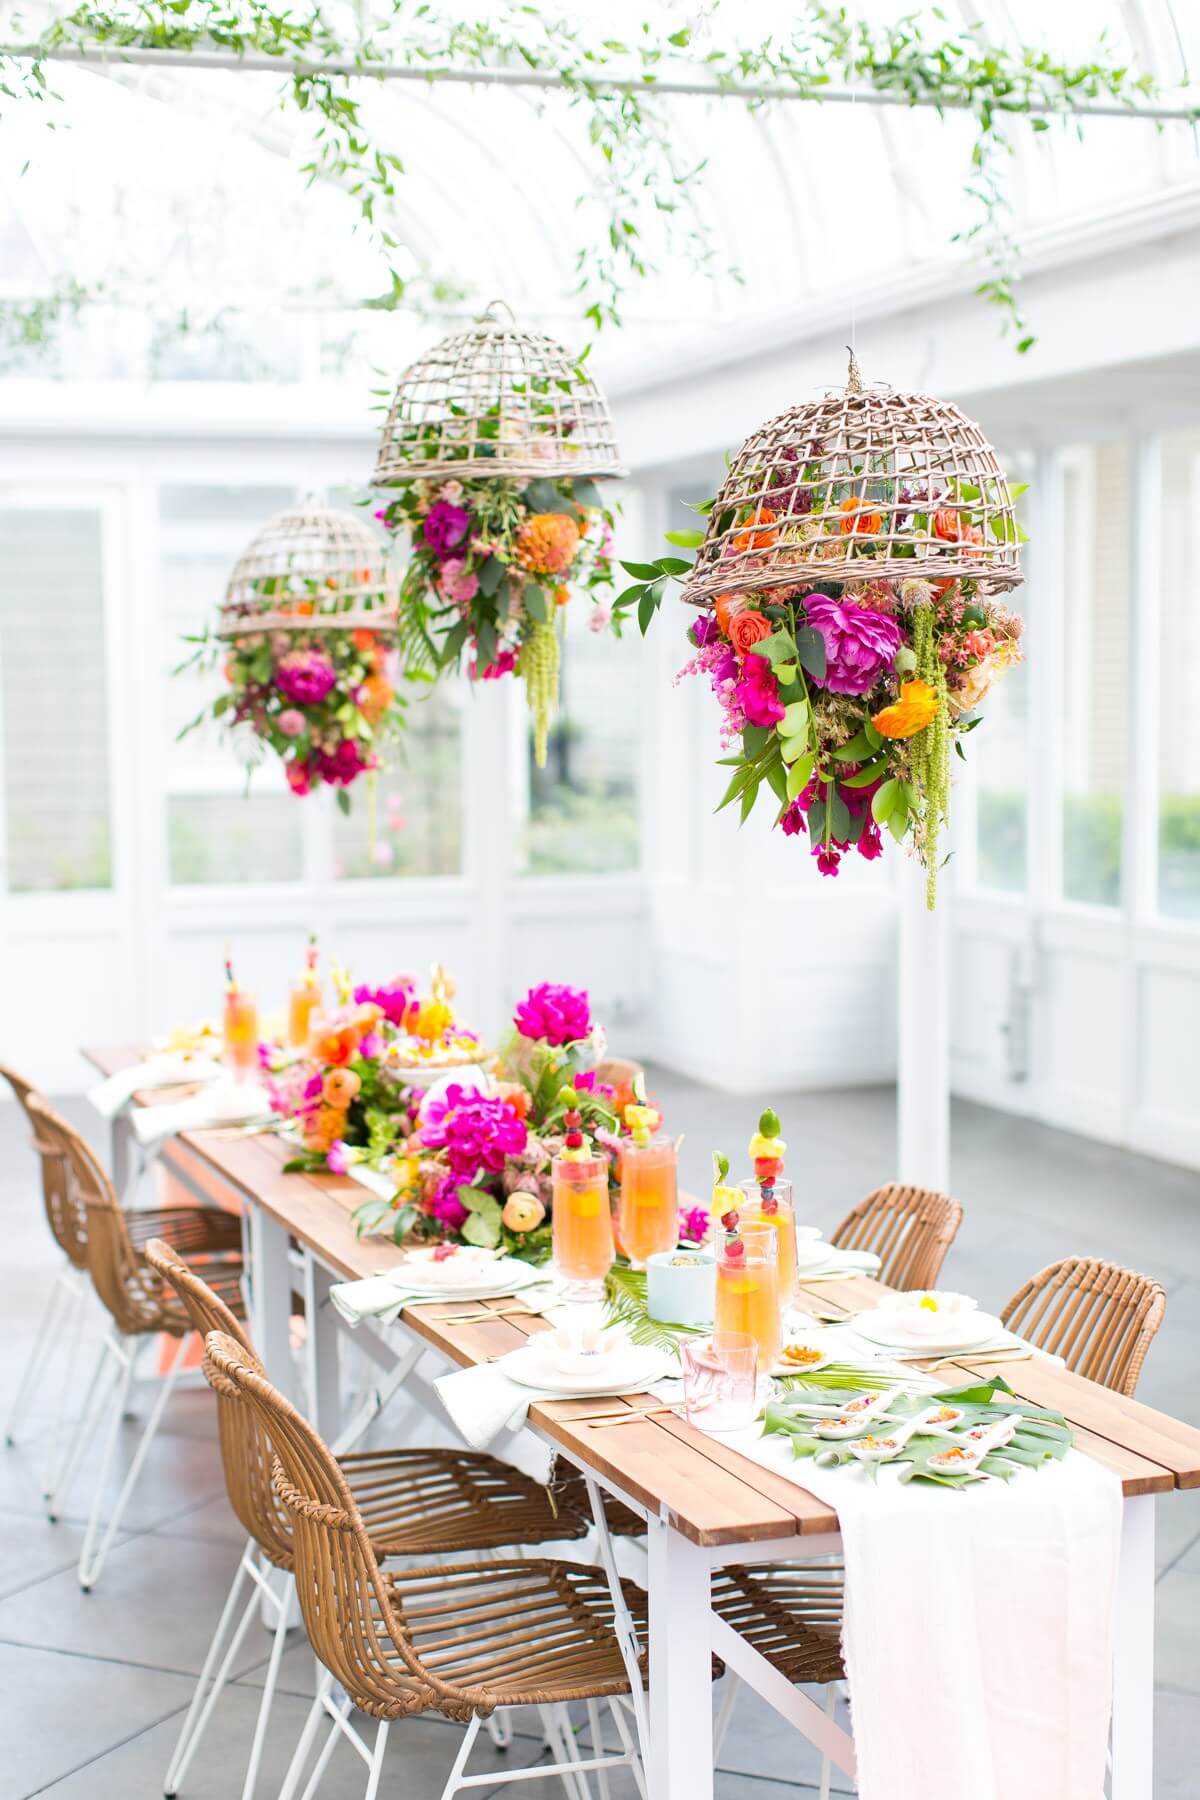 Almoço de verão com mesa tropical e lustre com flores